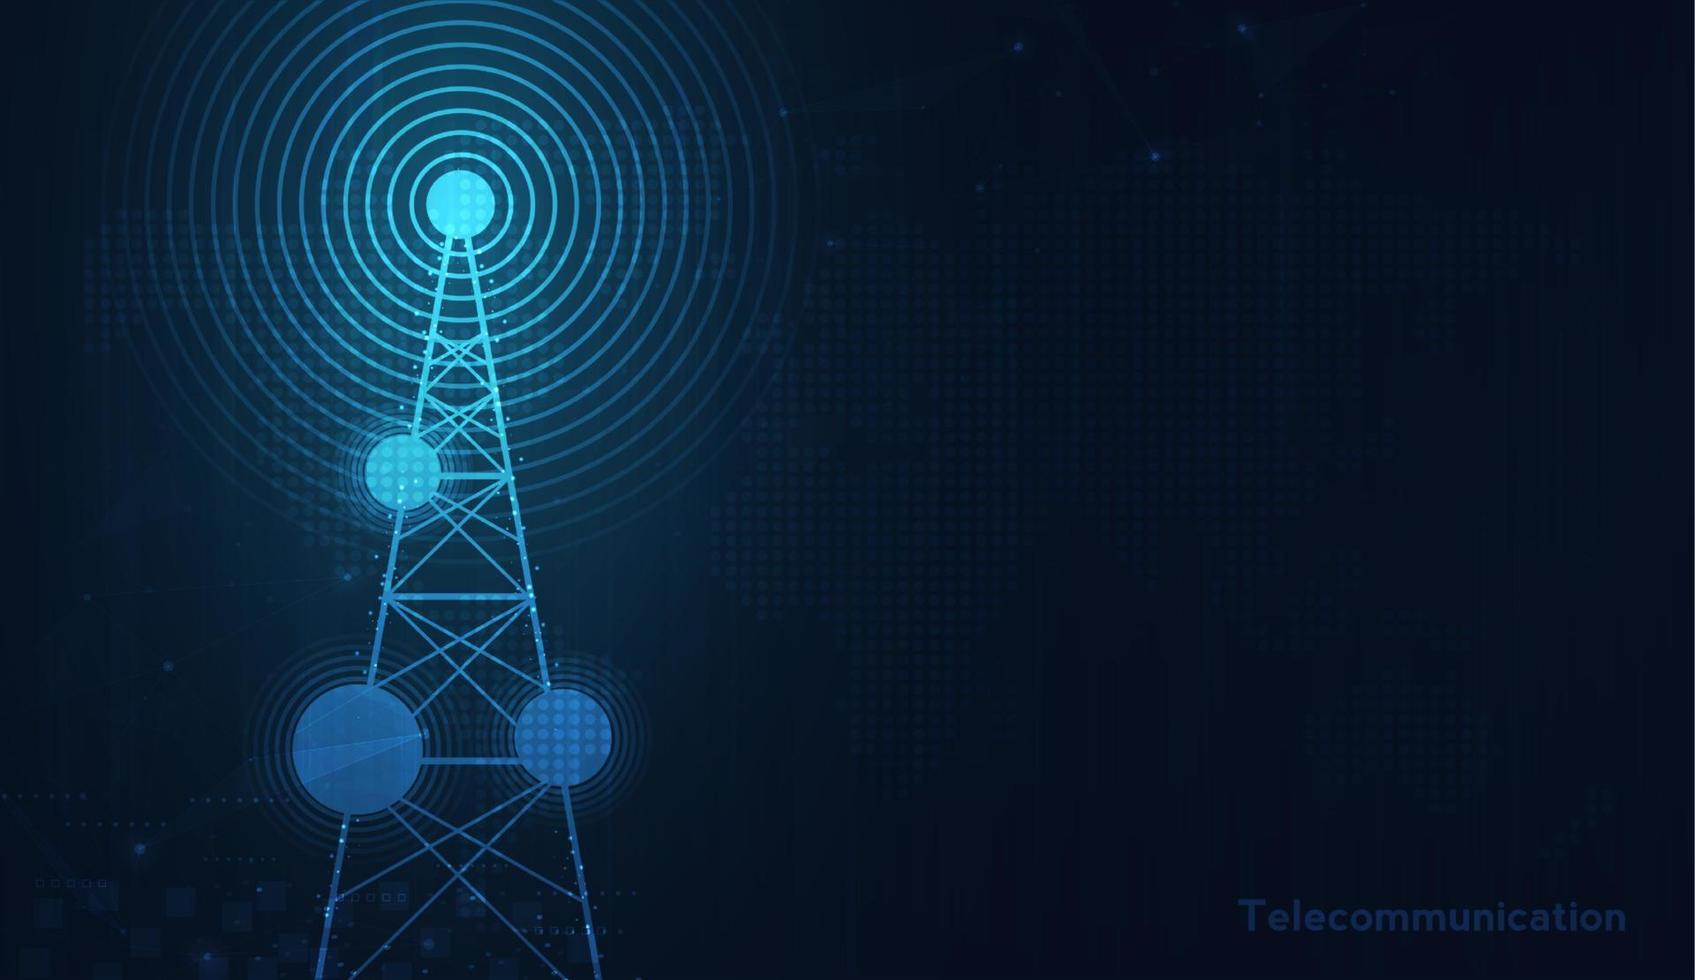 trasmettitore del segnale di telecomunicazioni, torre radio dalle linee. disegno vettoriale illustrazione.